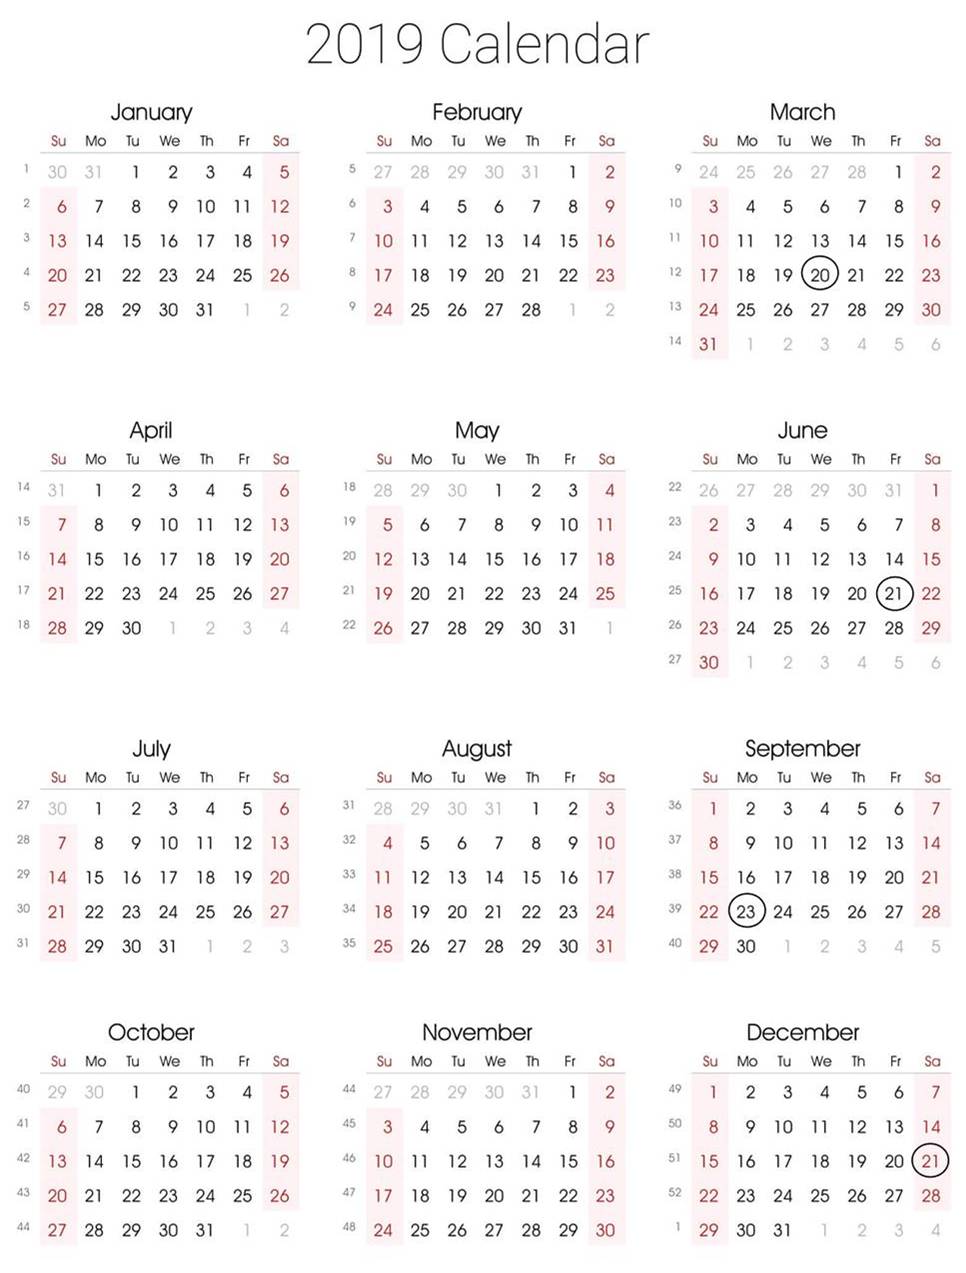 Calendar 2019 Gregorian marked